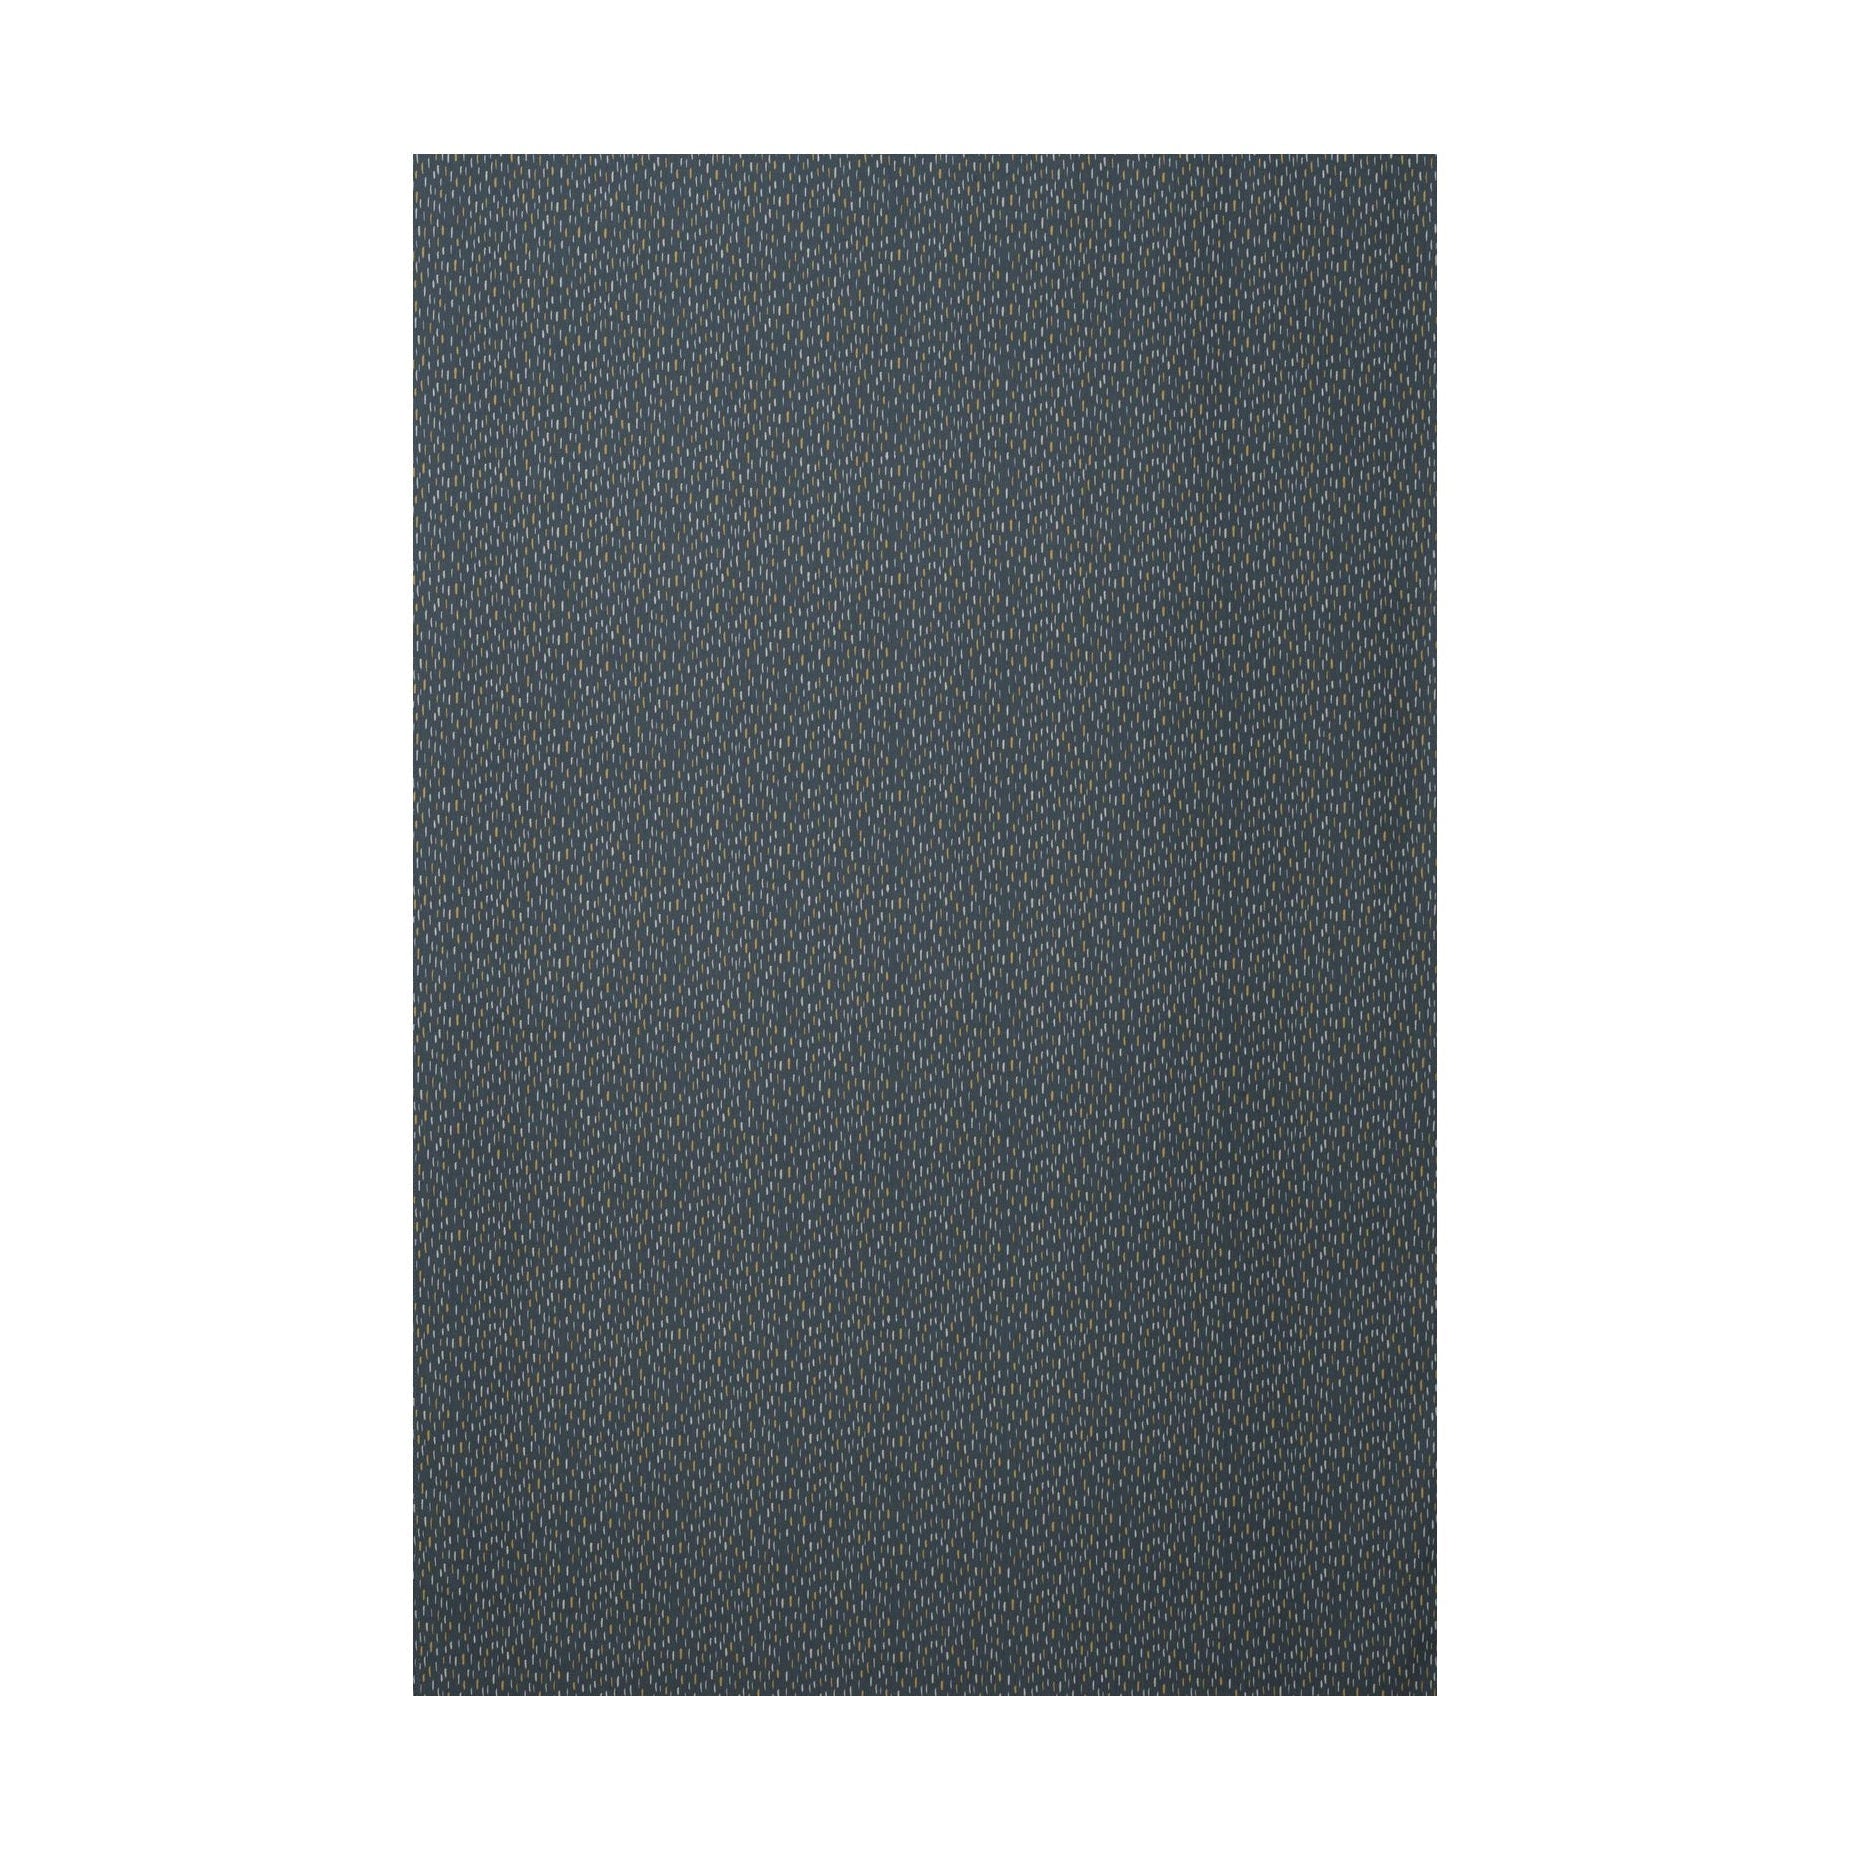 Spira kunststofbreedte 150 cm (prijs per meter), blauw